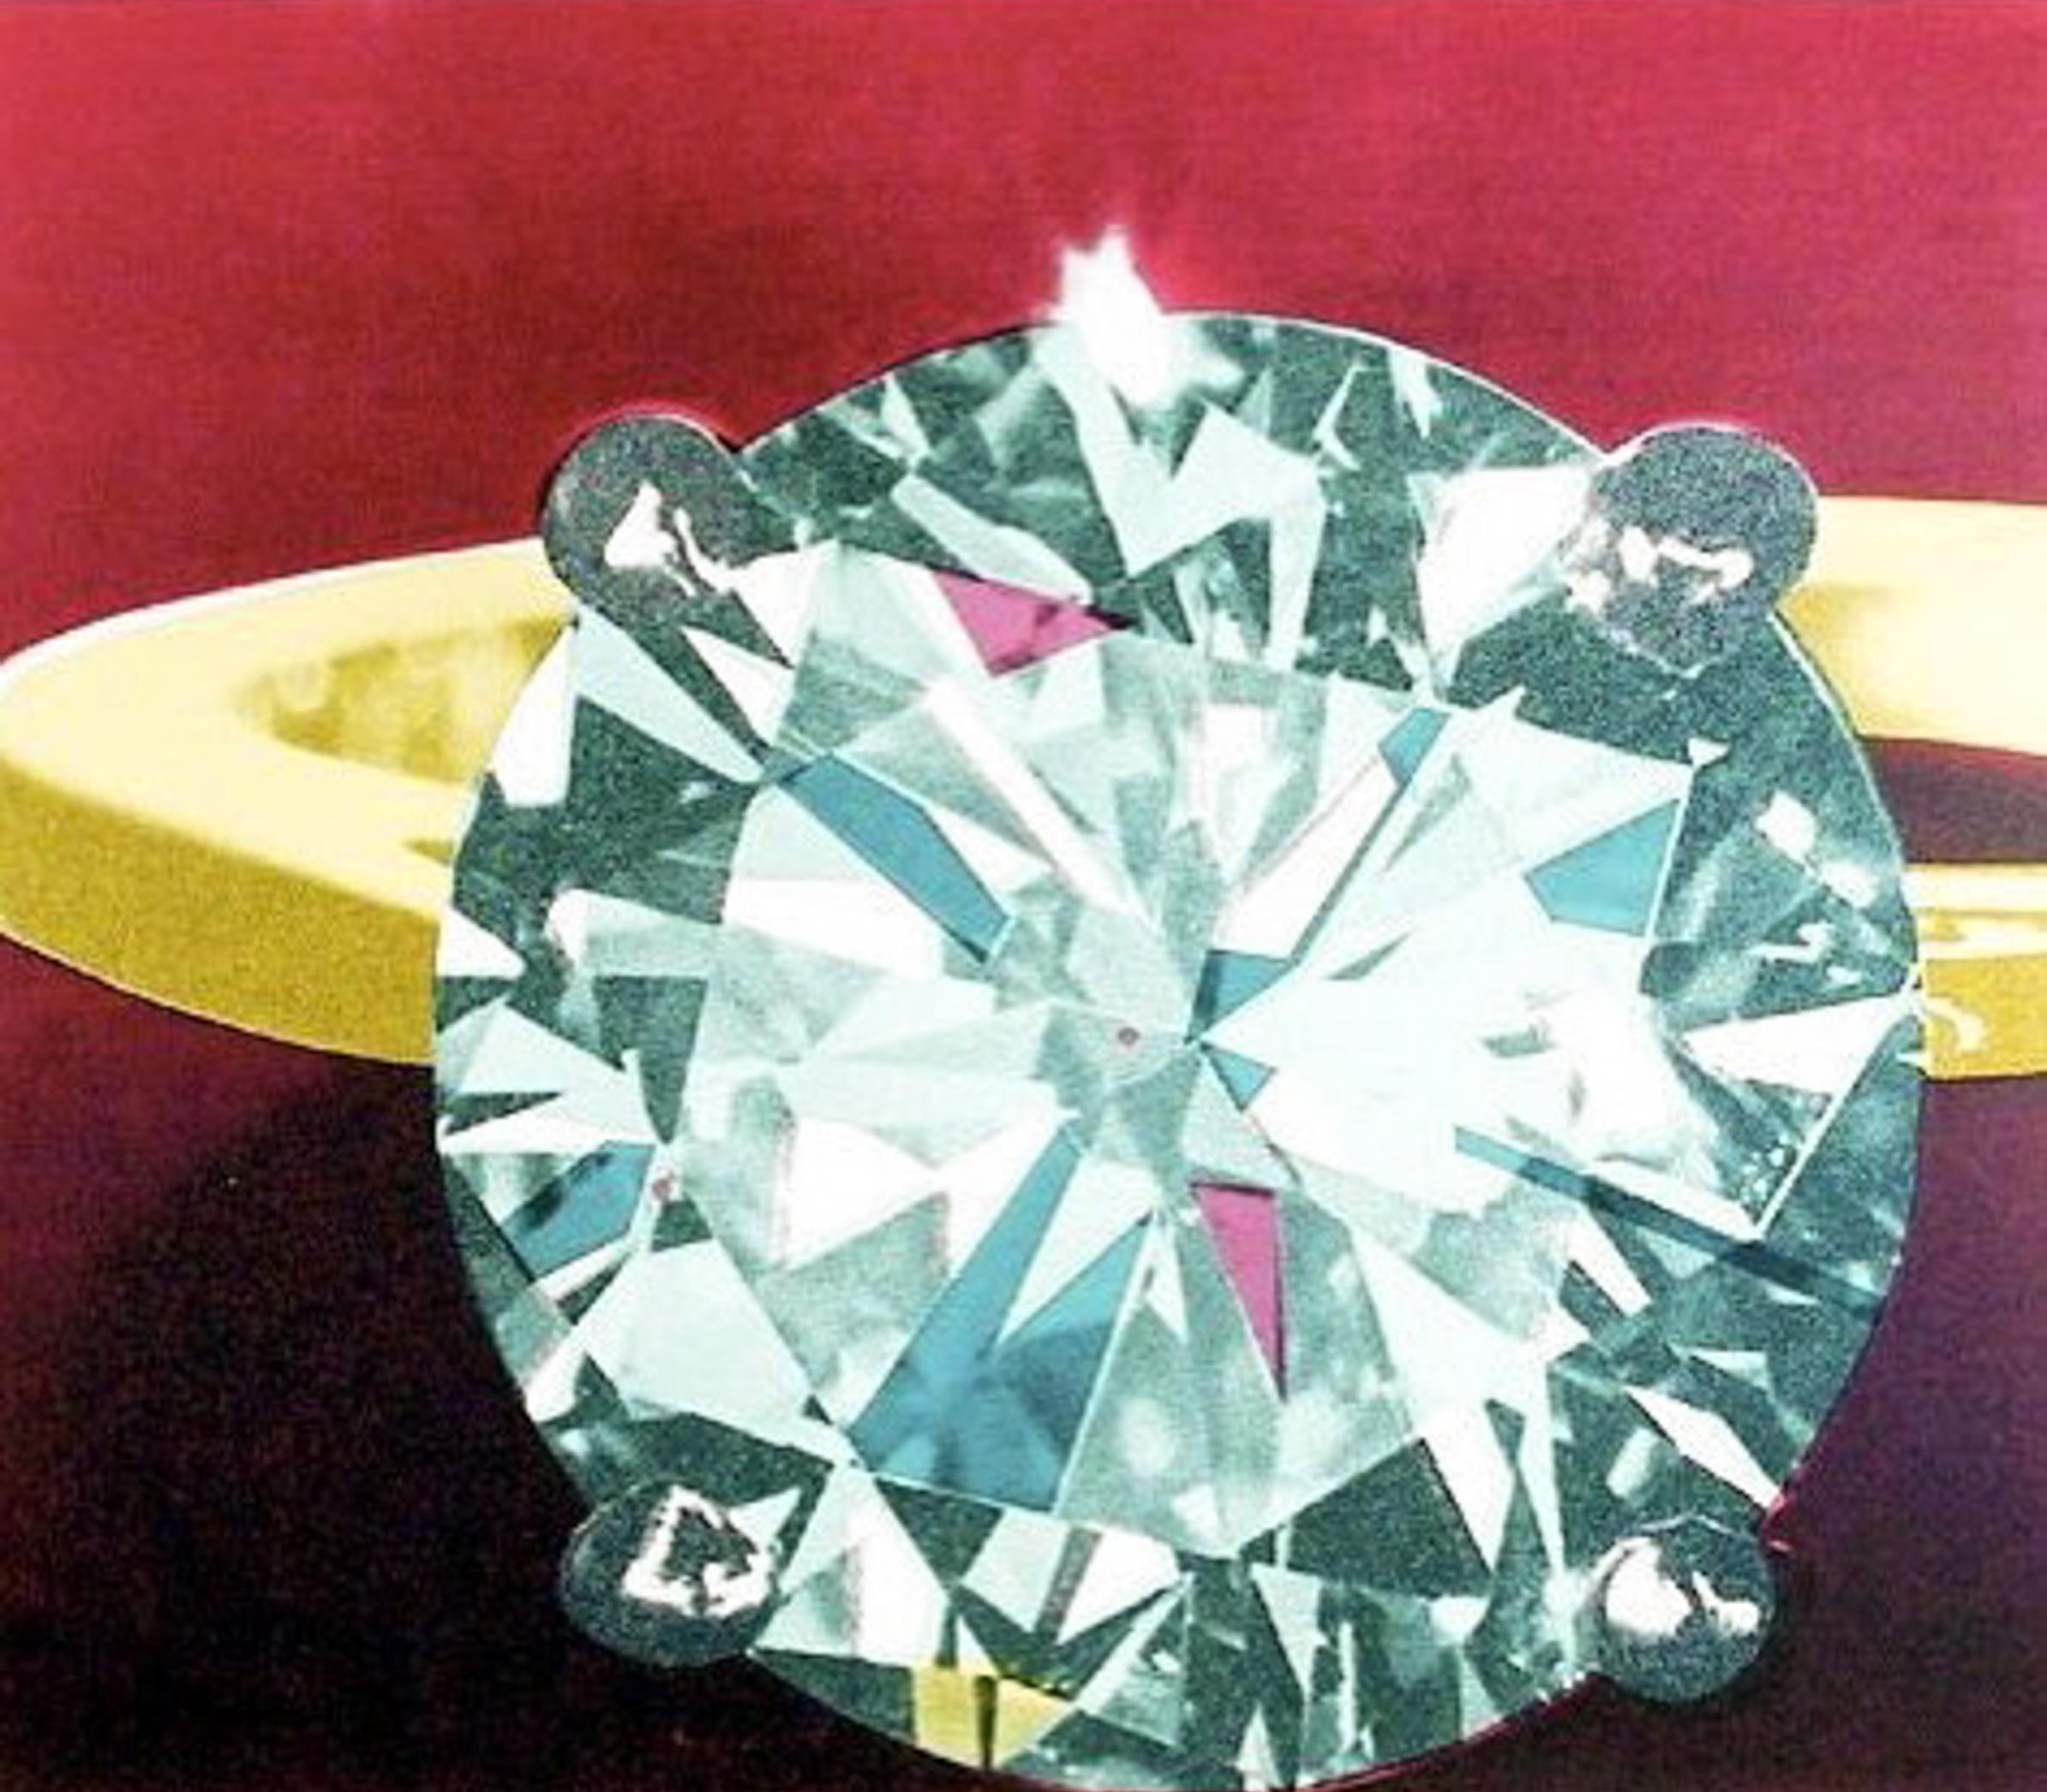 Diamond - Print by Richard Bernstein